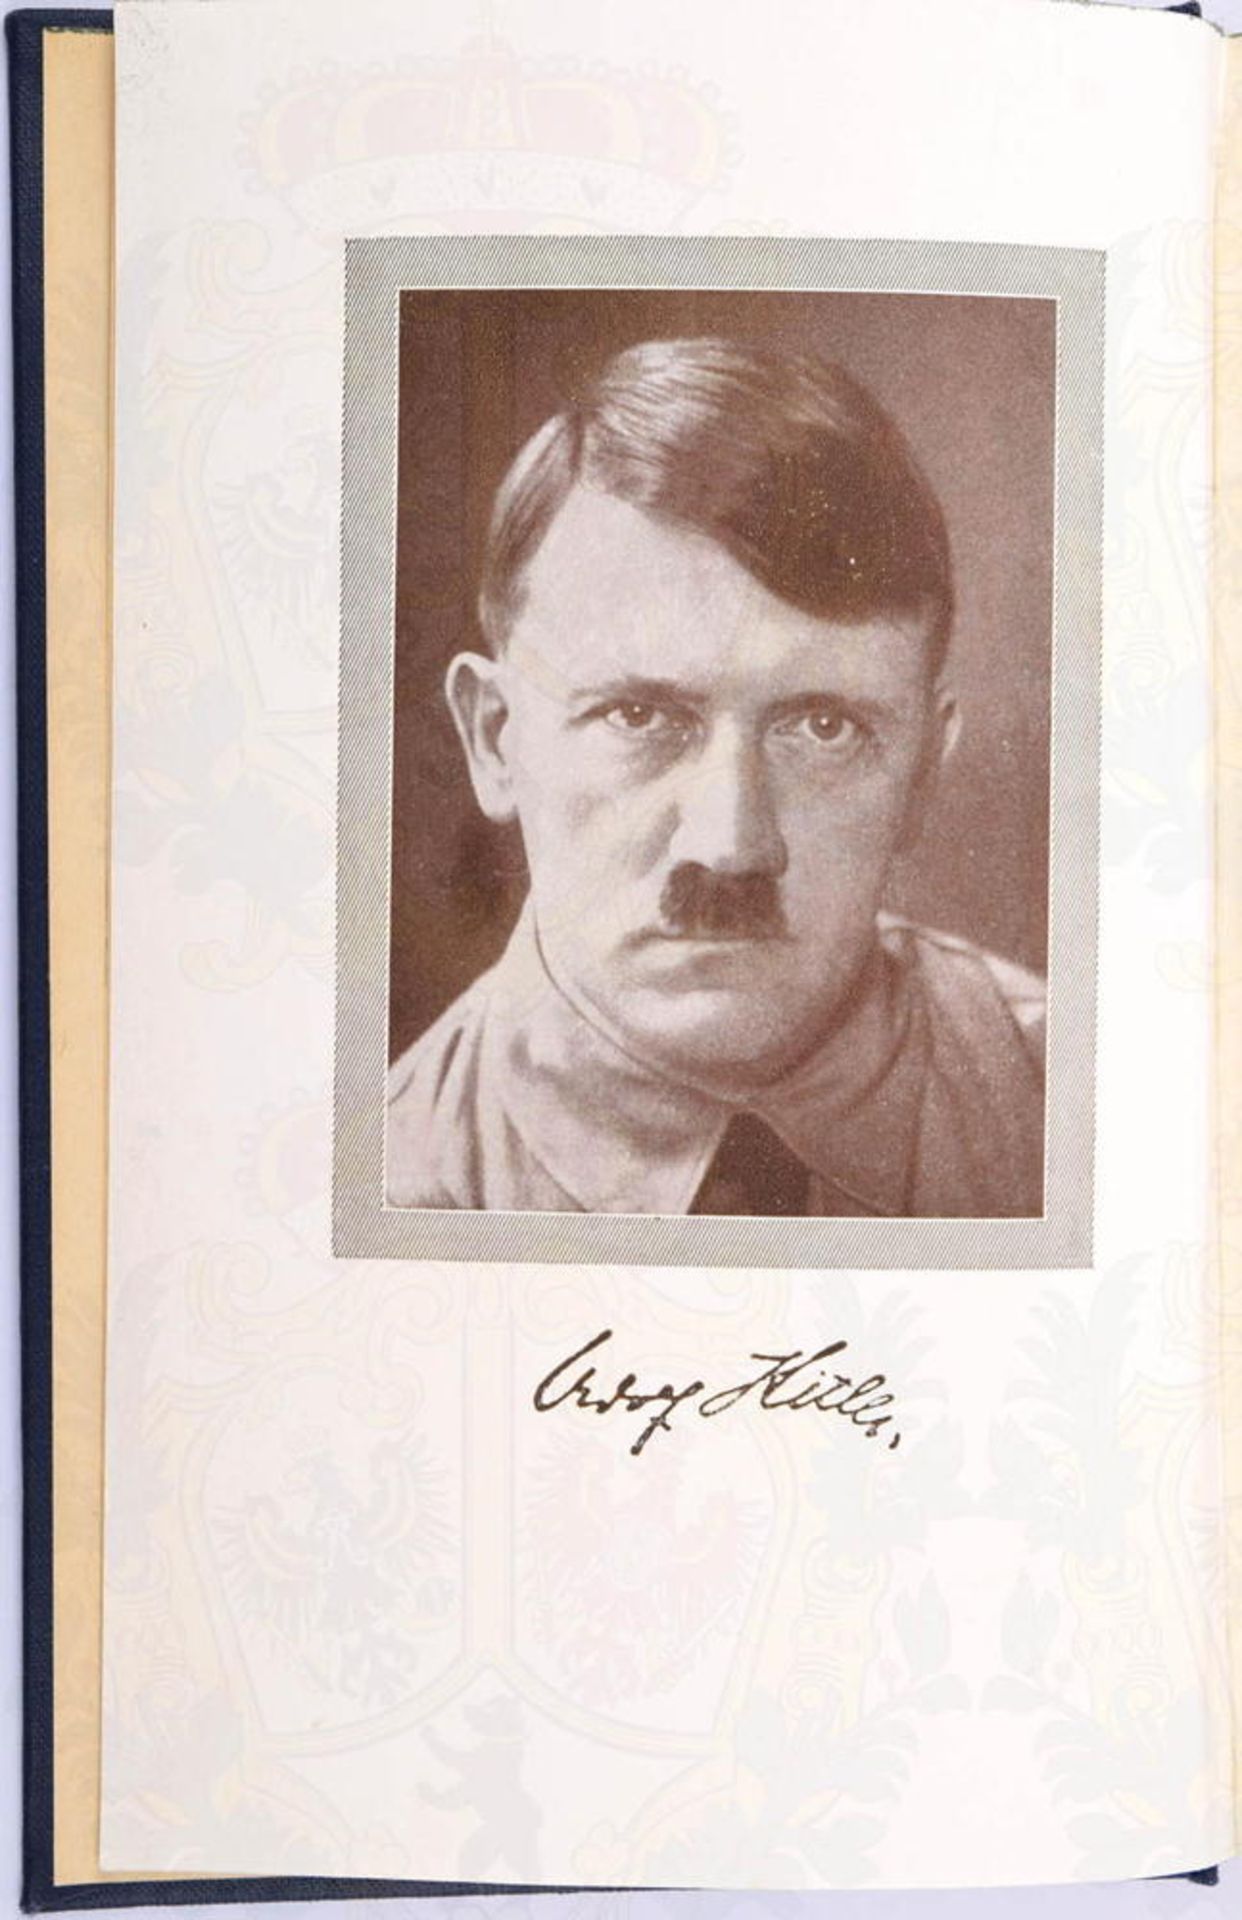 MEIN KAMPF, A. Hitler, Volksausgabe, Zentralverlag der NSDAP Franz Eher Nachf., 758.-762. Auflage, M - Bild 3 aus 3